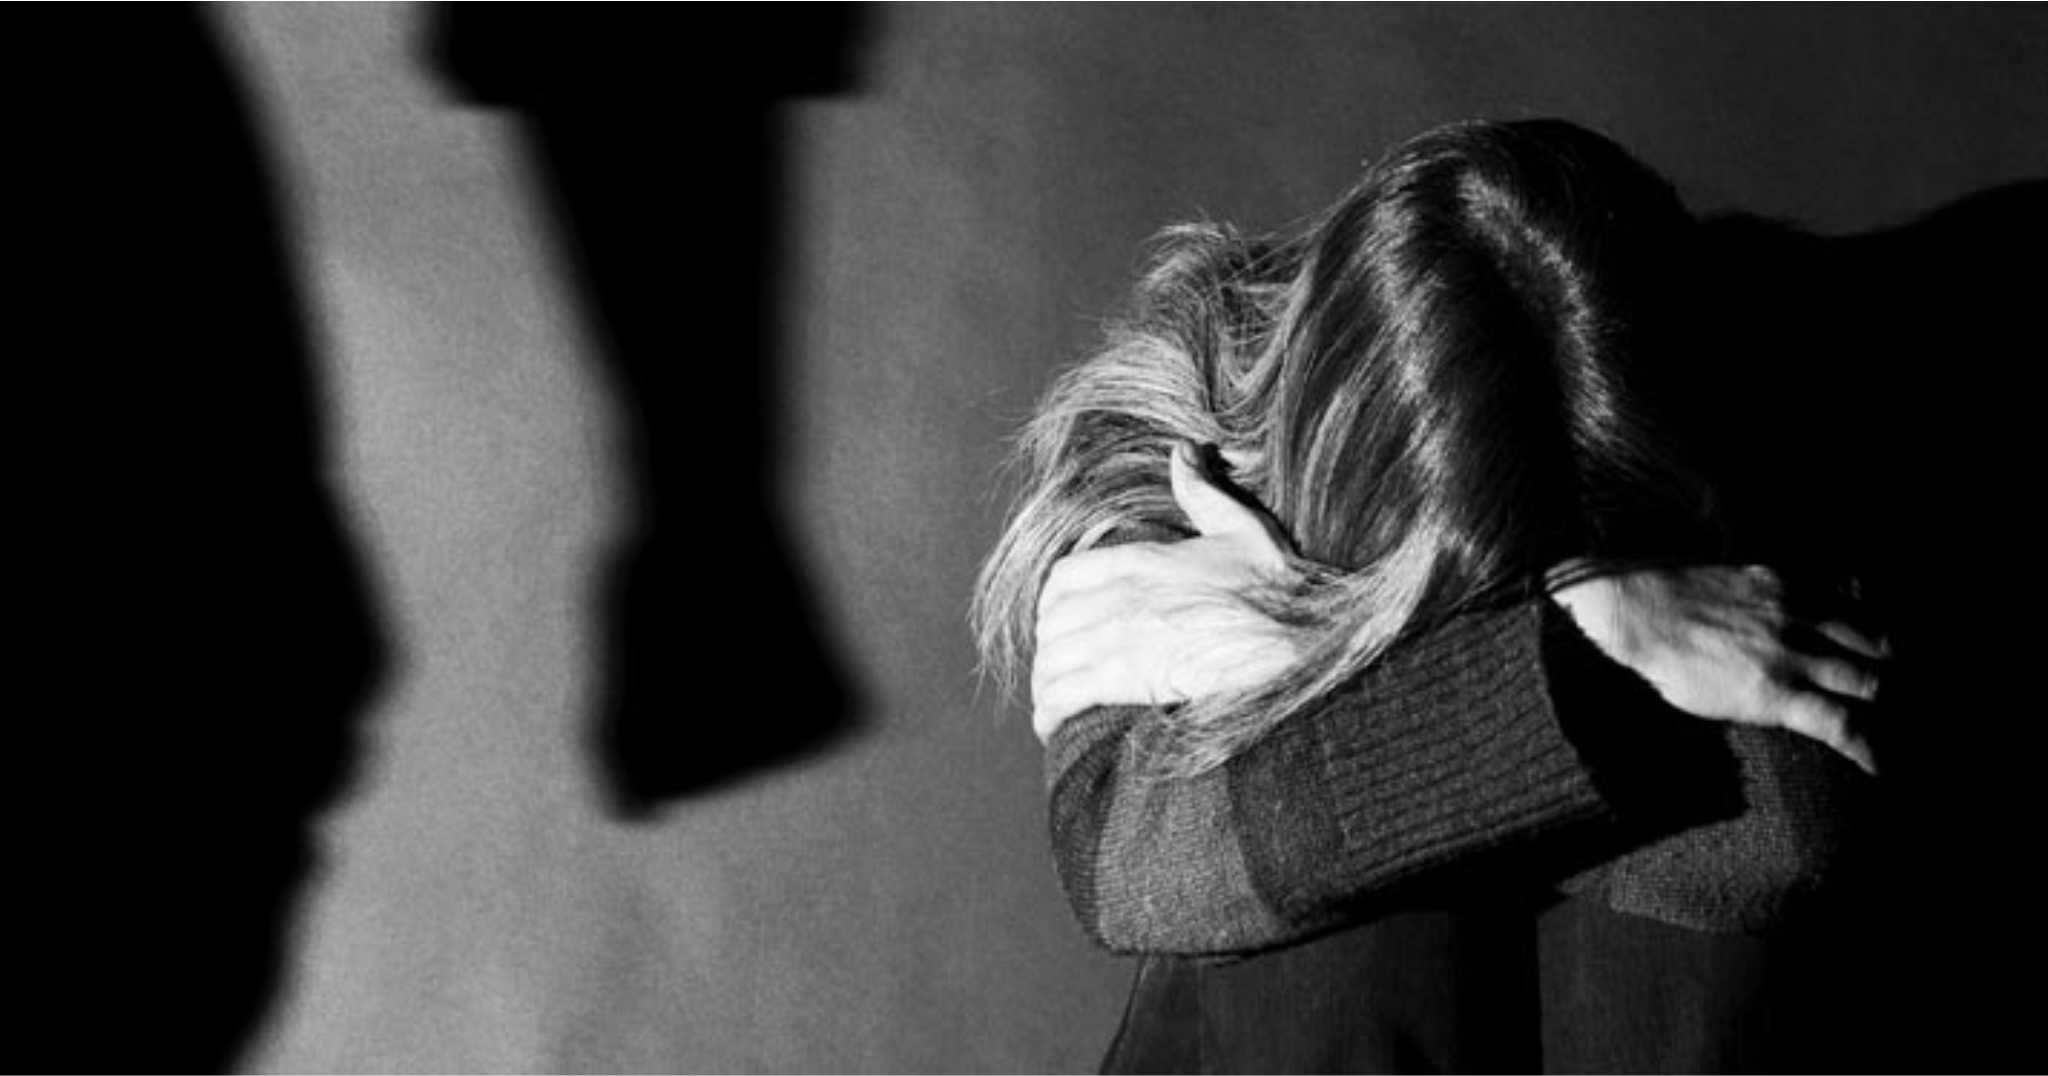 Θεσσαλονίκη: Ένοχος κρίθηκε άντρας που ξυλοκόπησε την πρώην σύντροφό του έξω από το σχολείο της κόρης τους